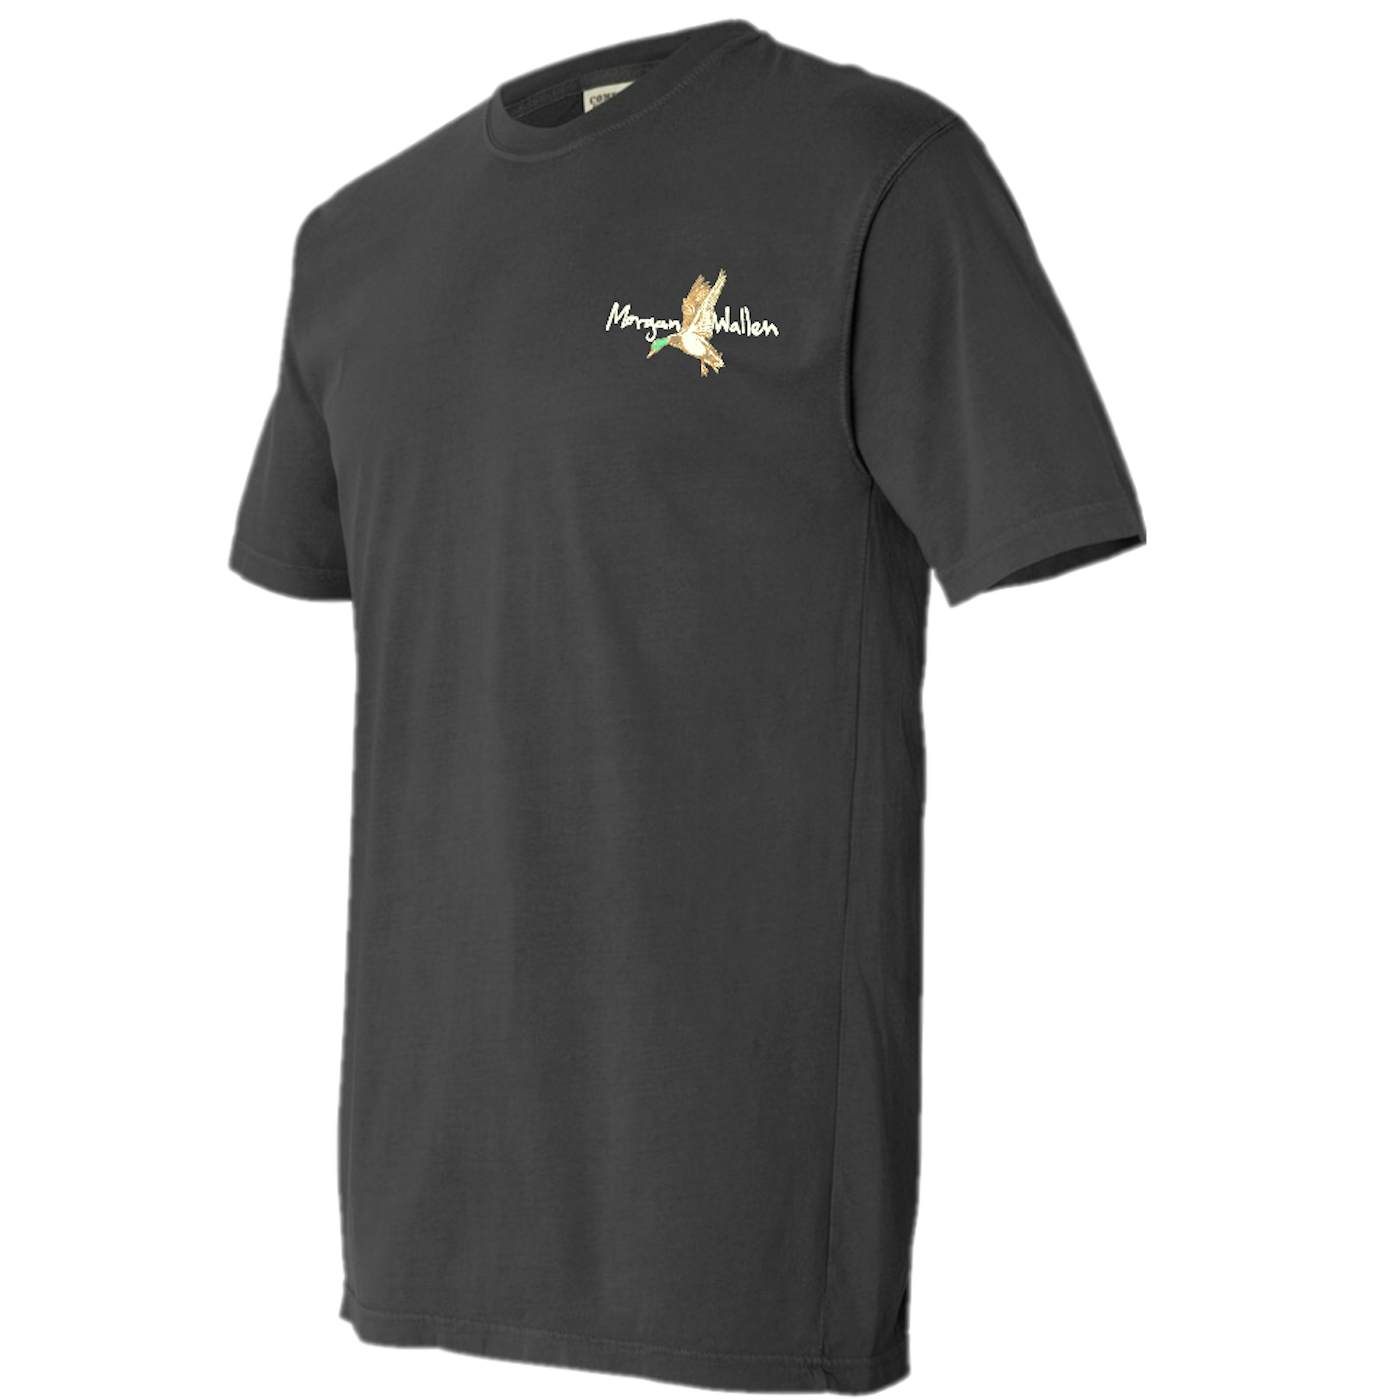 Morgan Wallen Duck T-Shirt